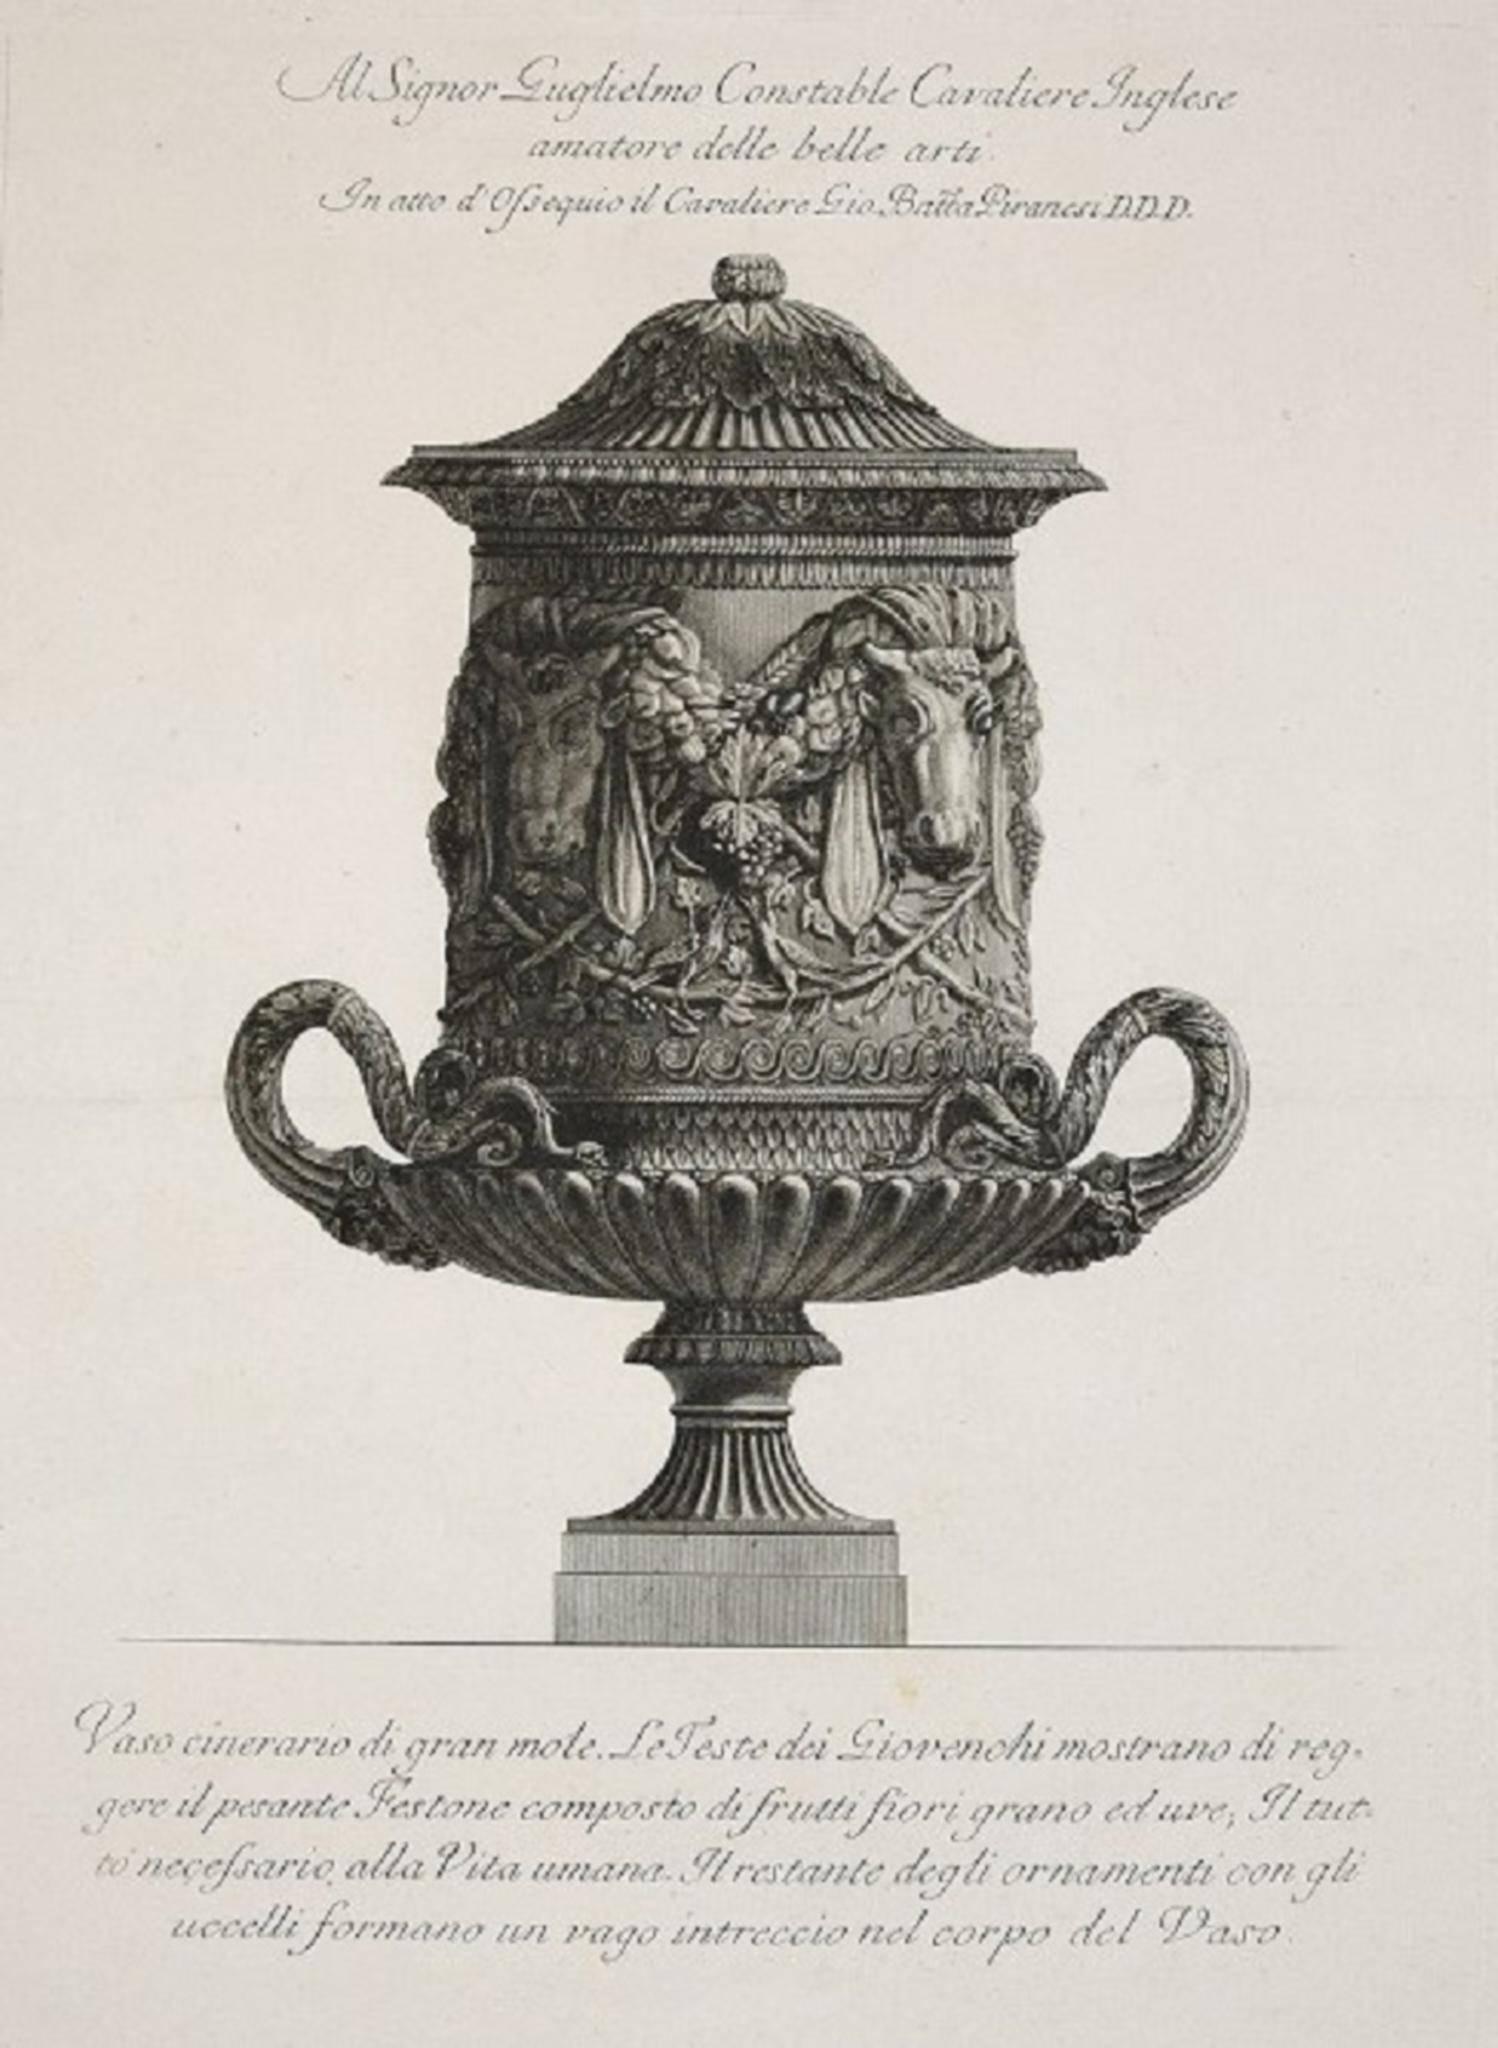 Giovanni Battista Piranesi Still-Life Print - Vaso Cinerario di Gran Mole, etching from "Vases, Candelabras, Grave, Stones..."